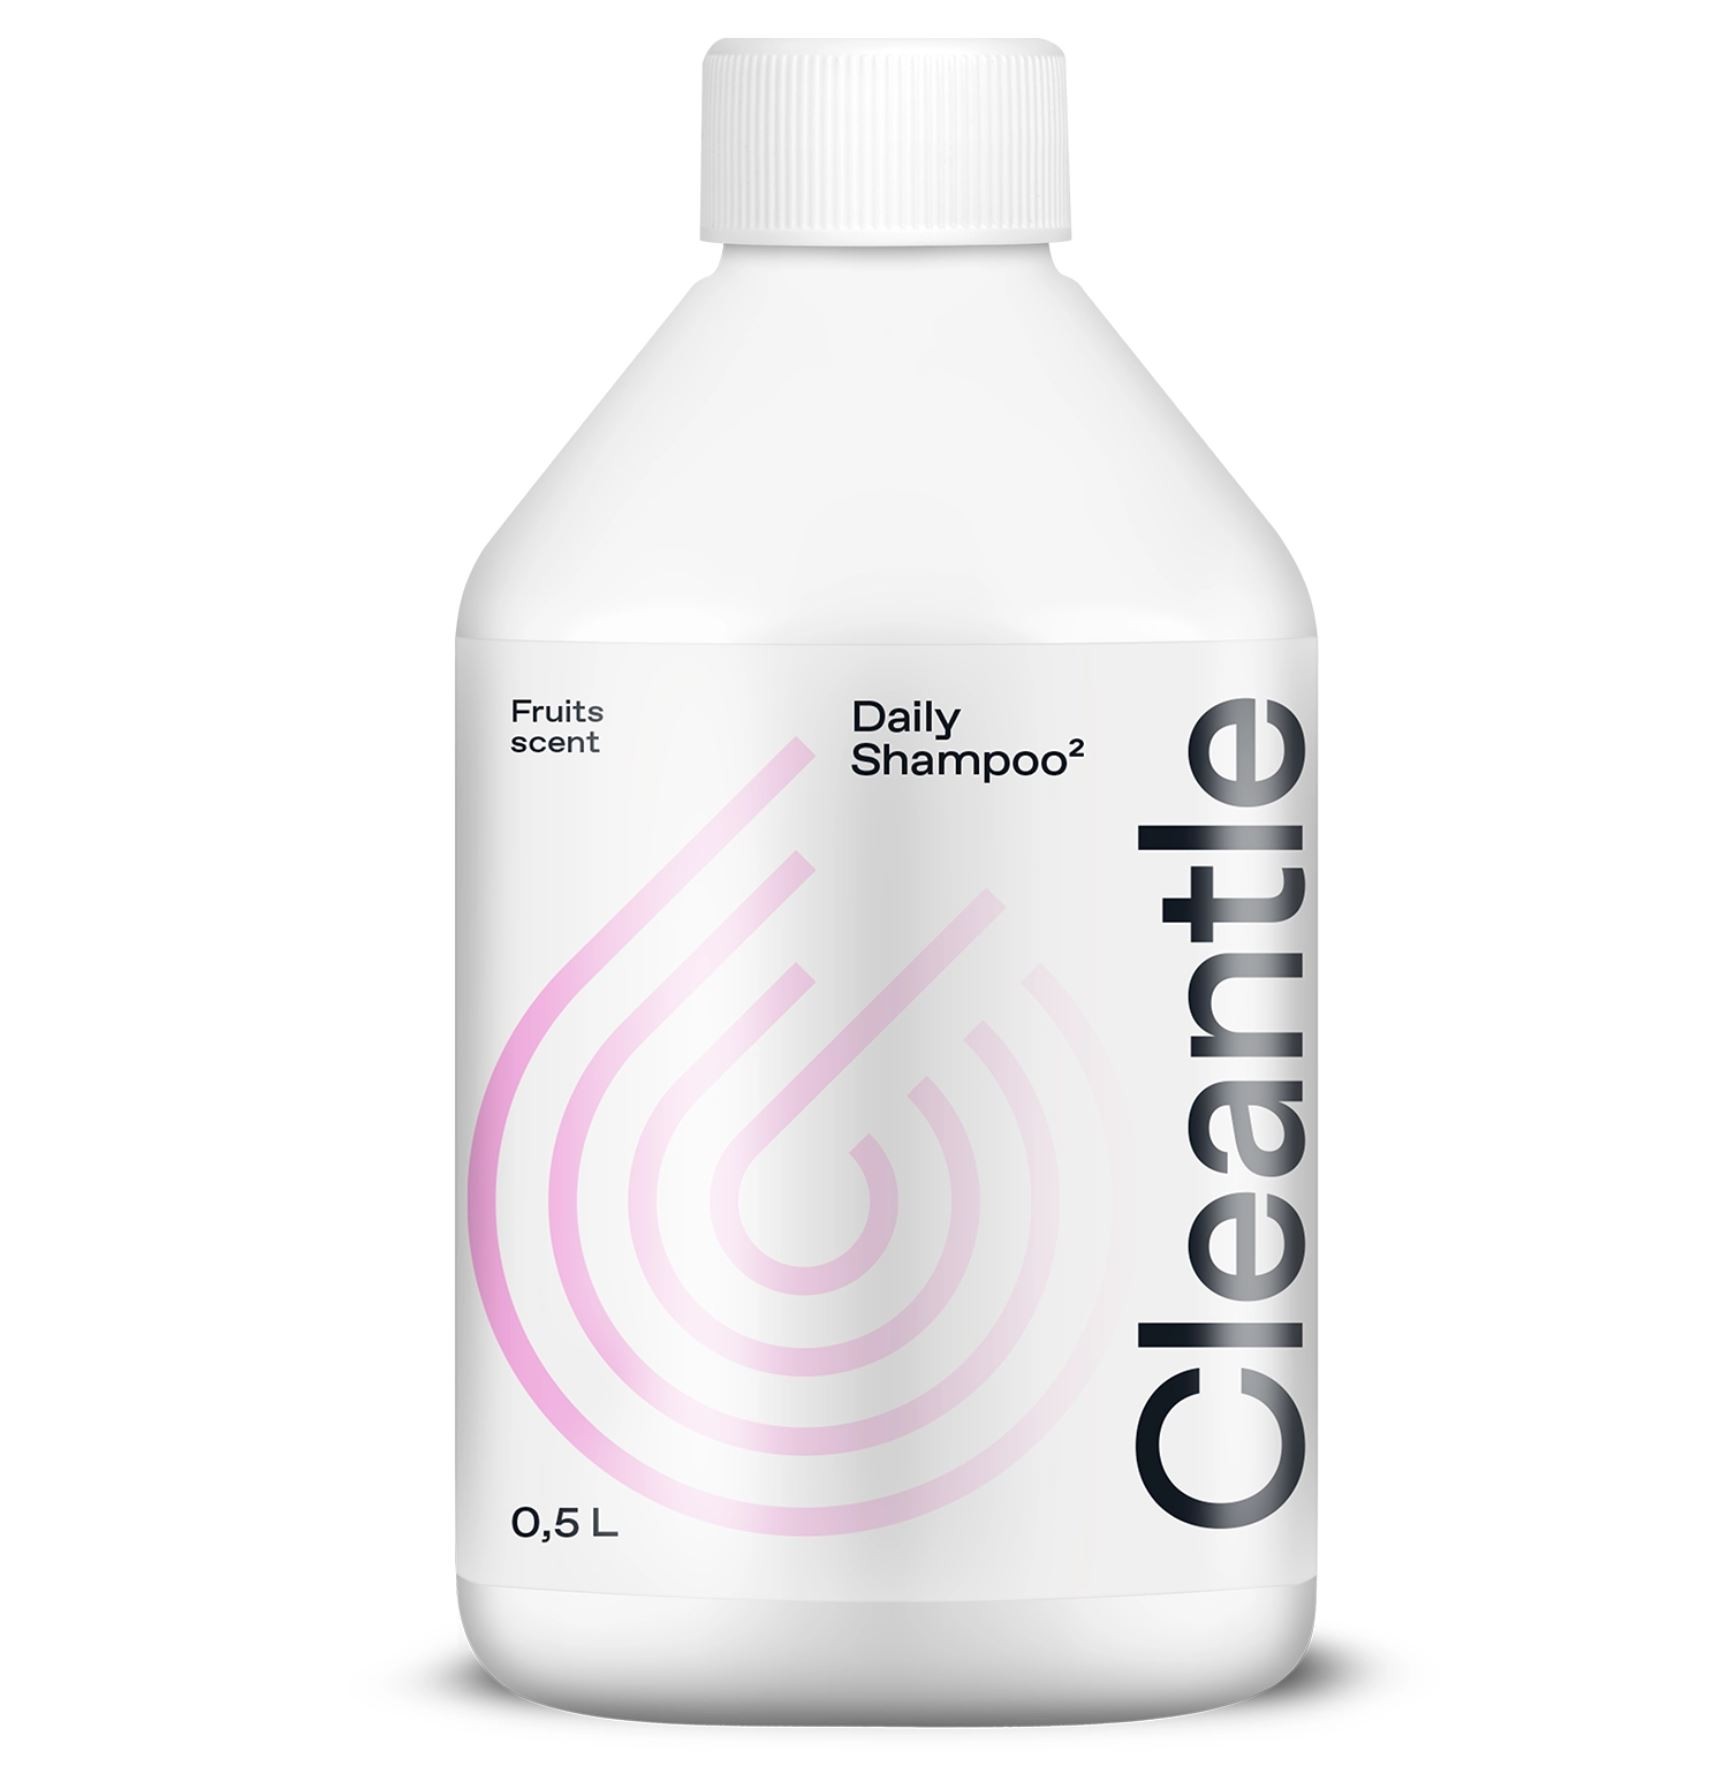 Autošampon Cleantle Daily Shampoo² (500 ml)